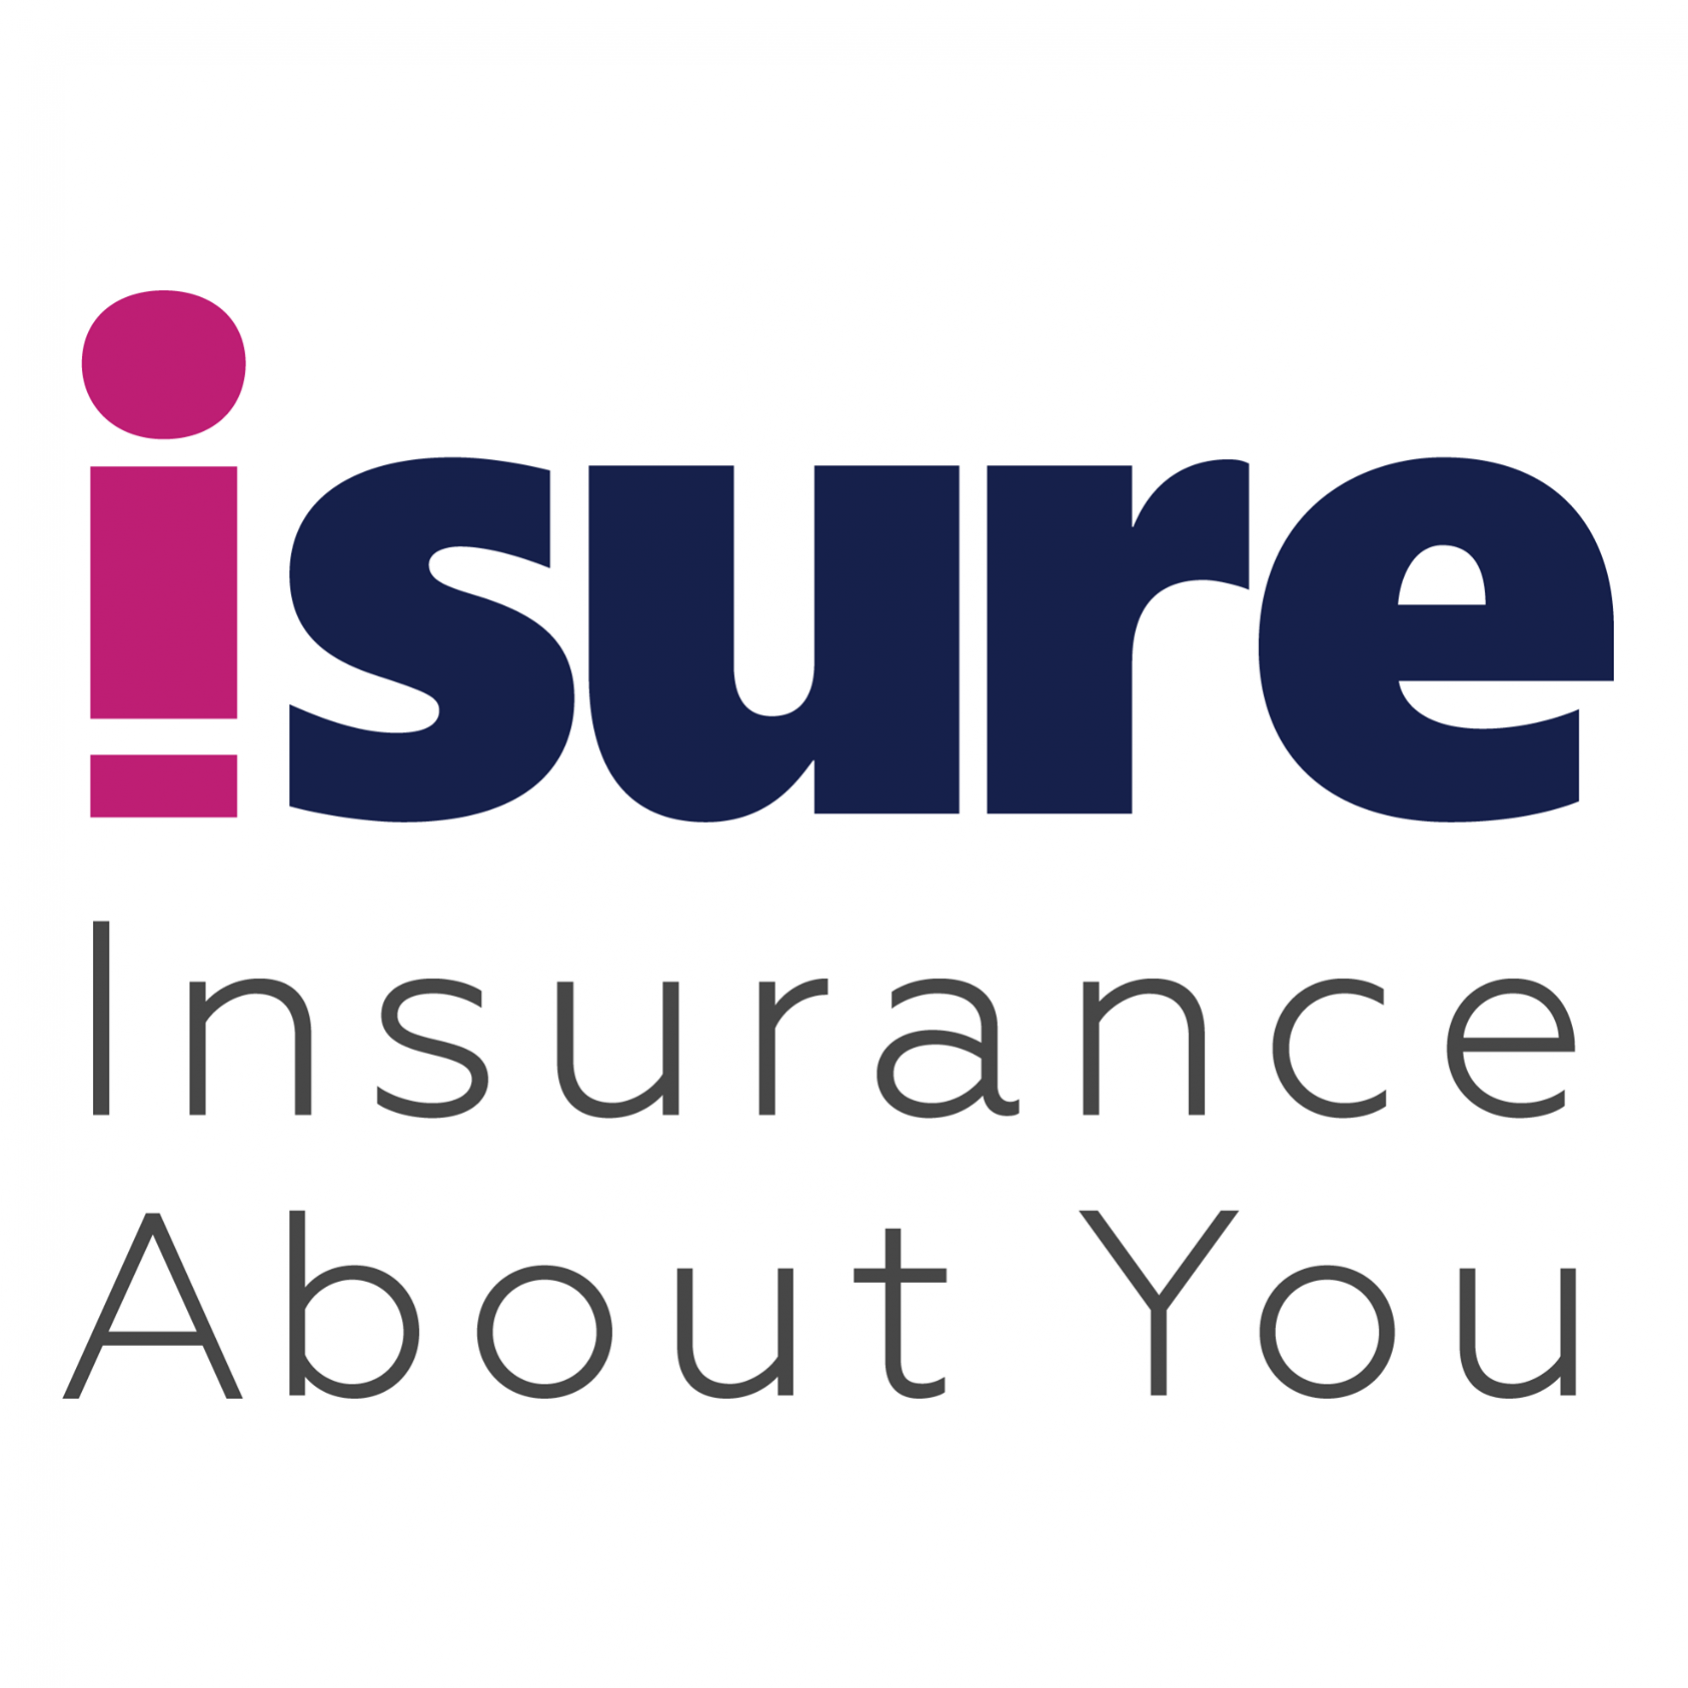 iSureinsurance